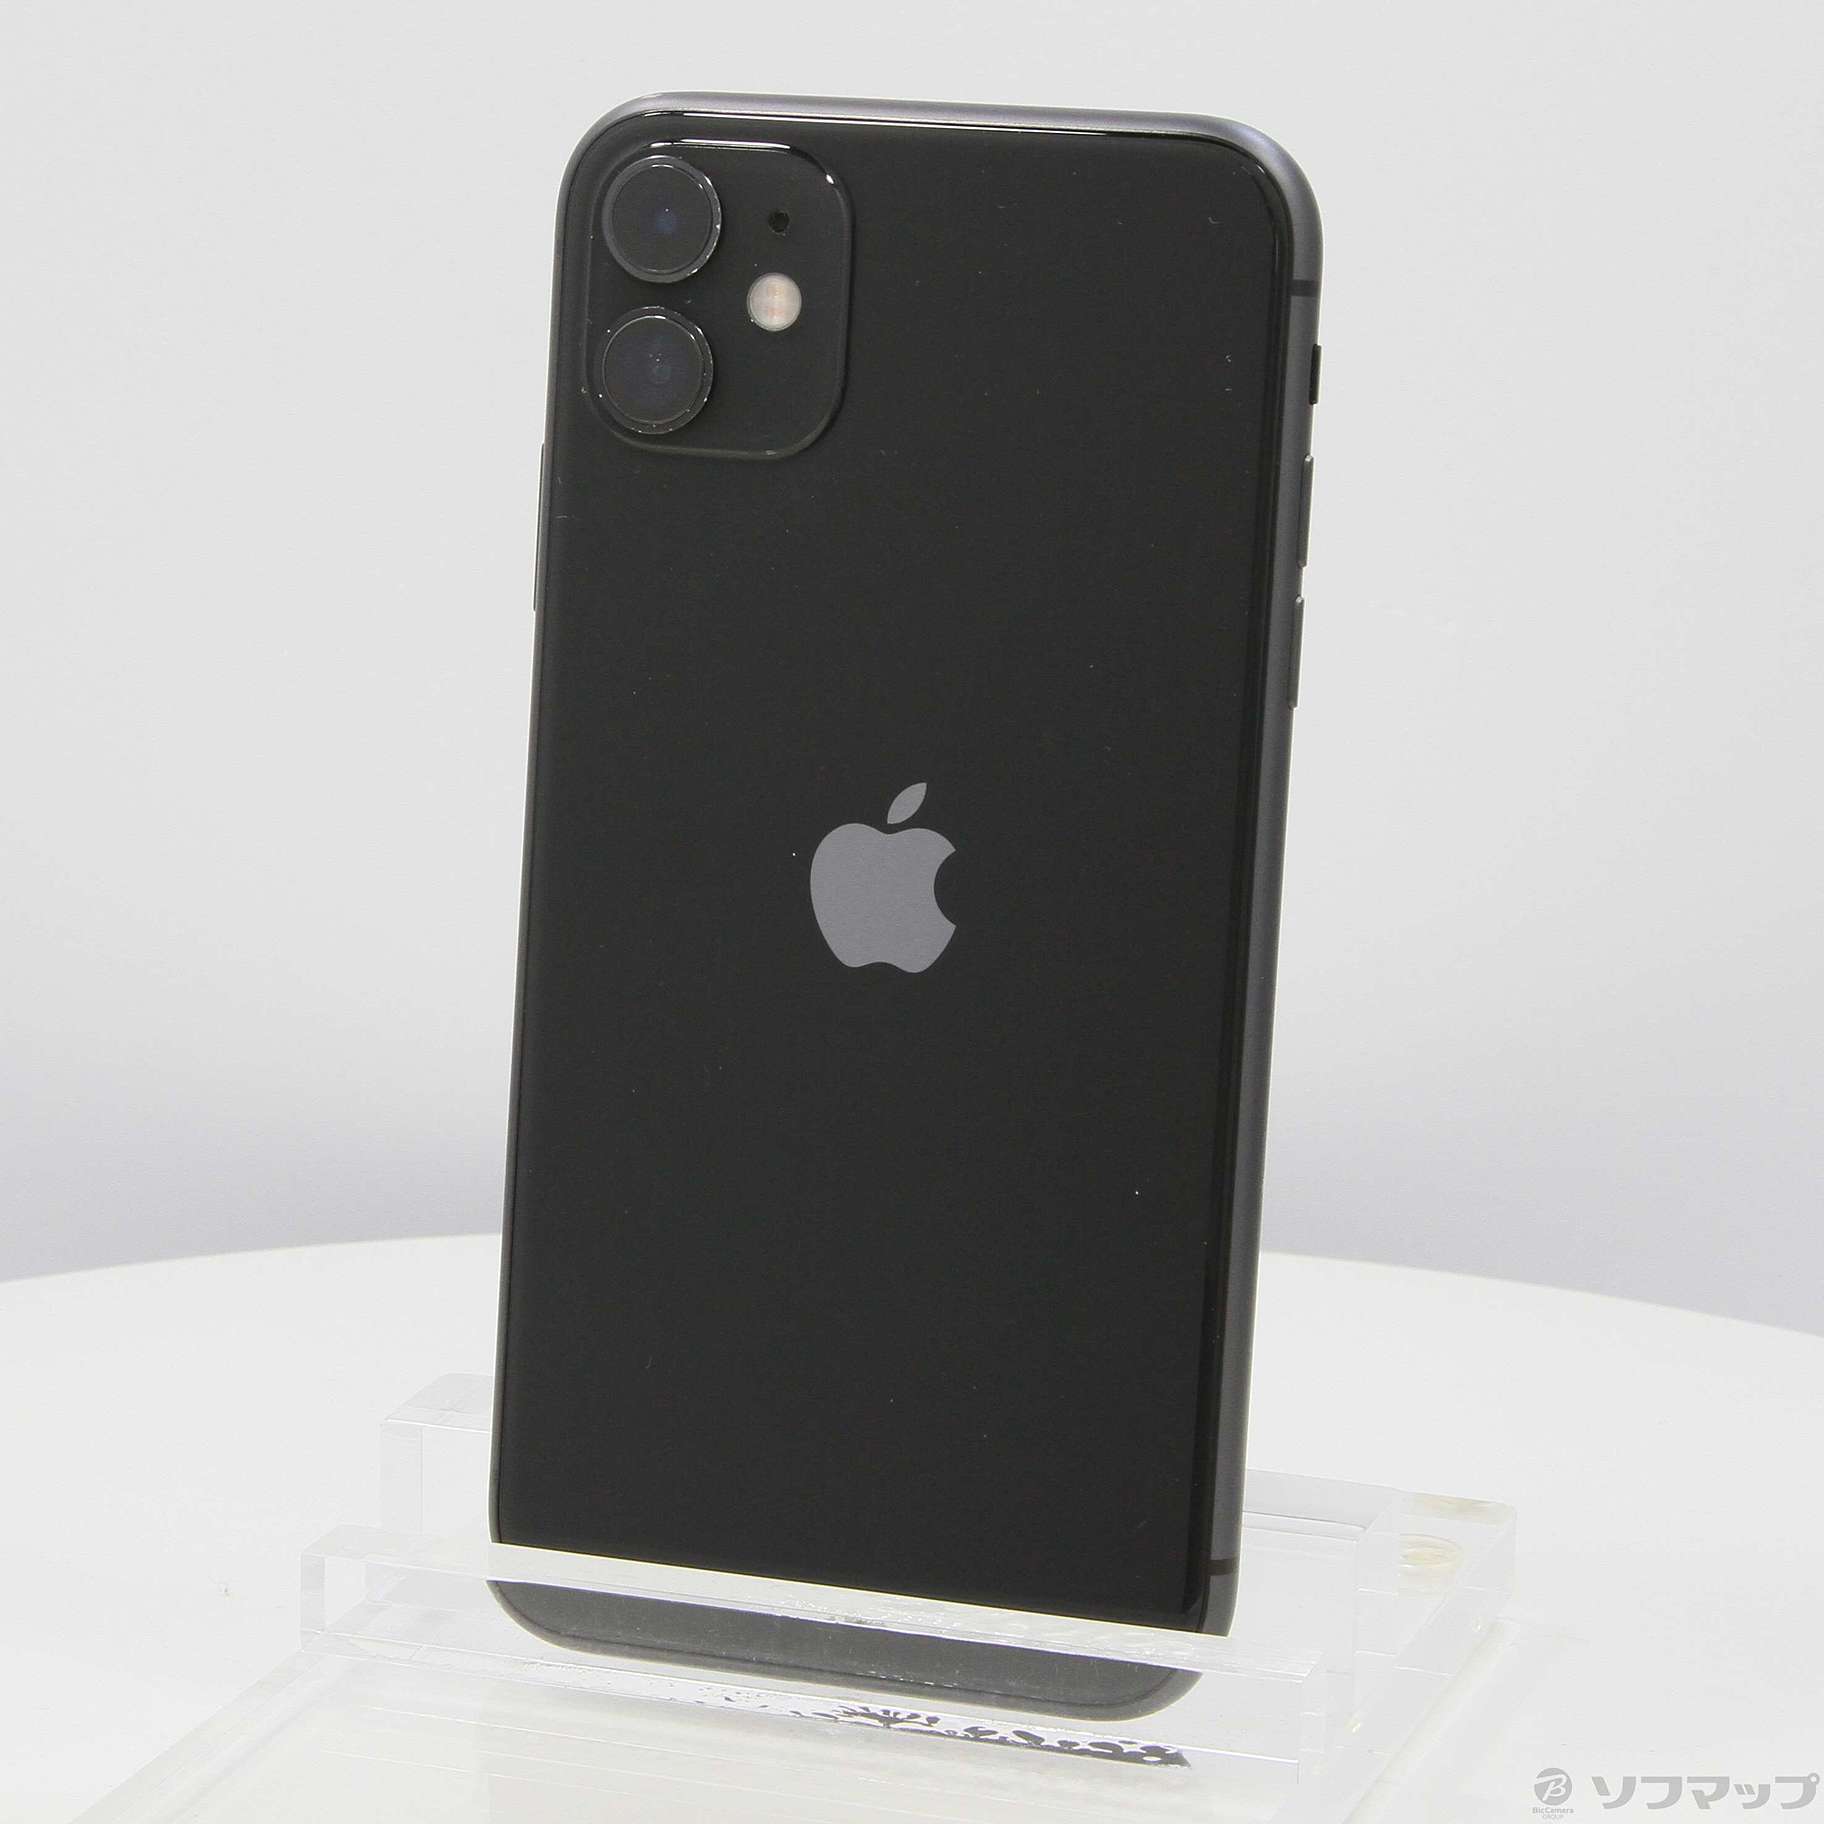 の最新トレンド iPhone 11 ブラック 64 GB SIMフリー